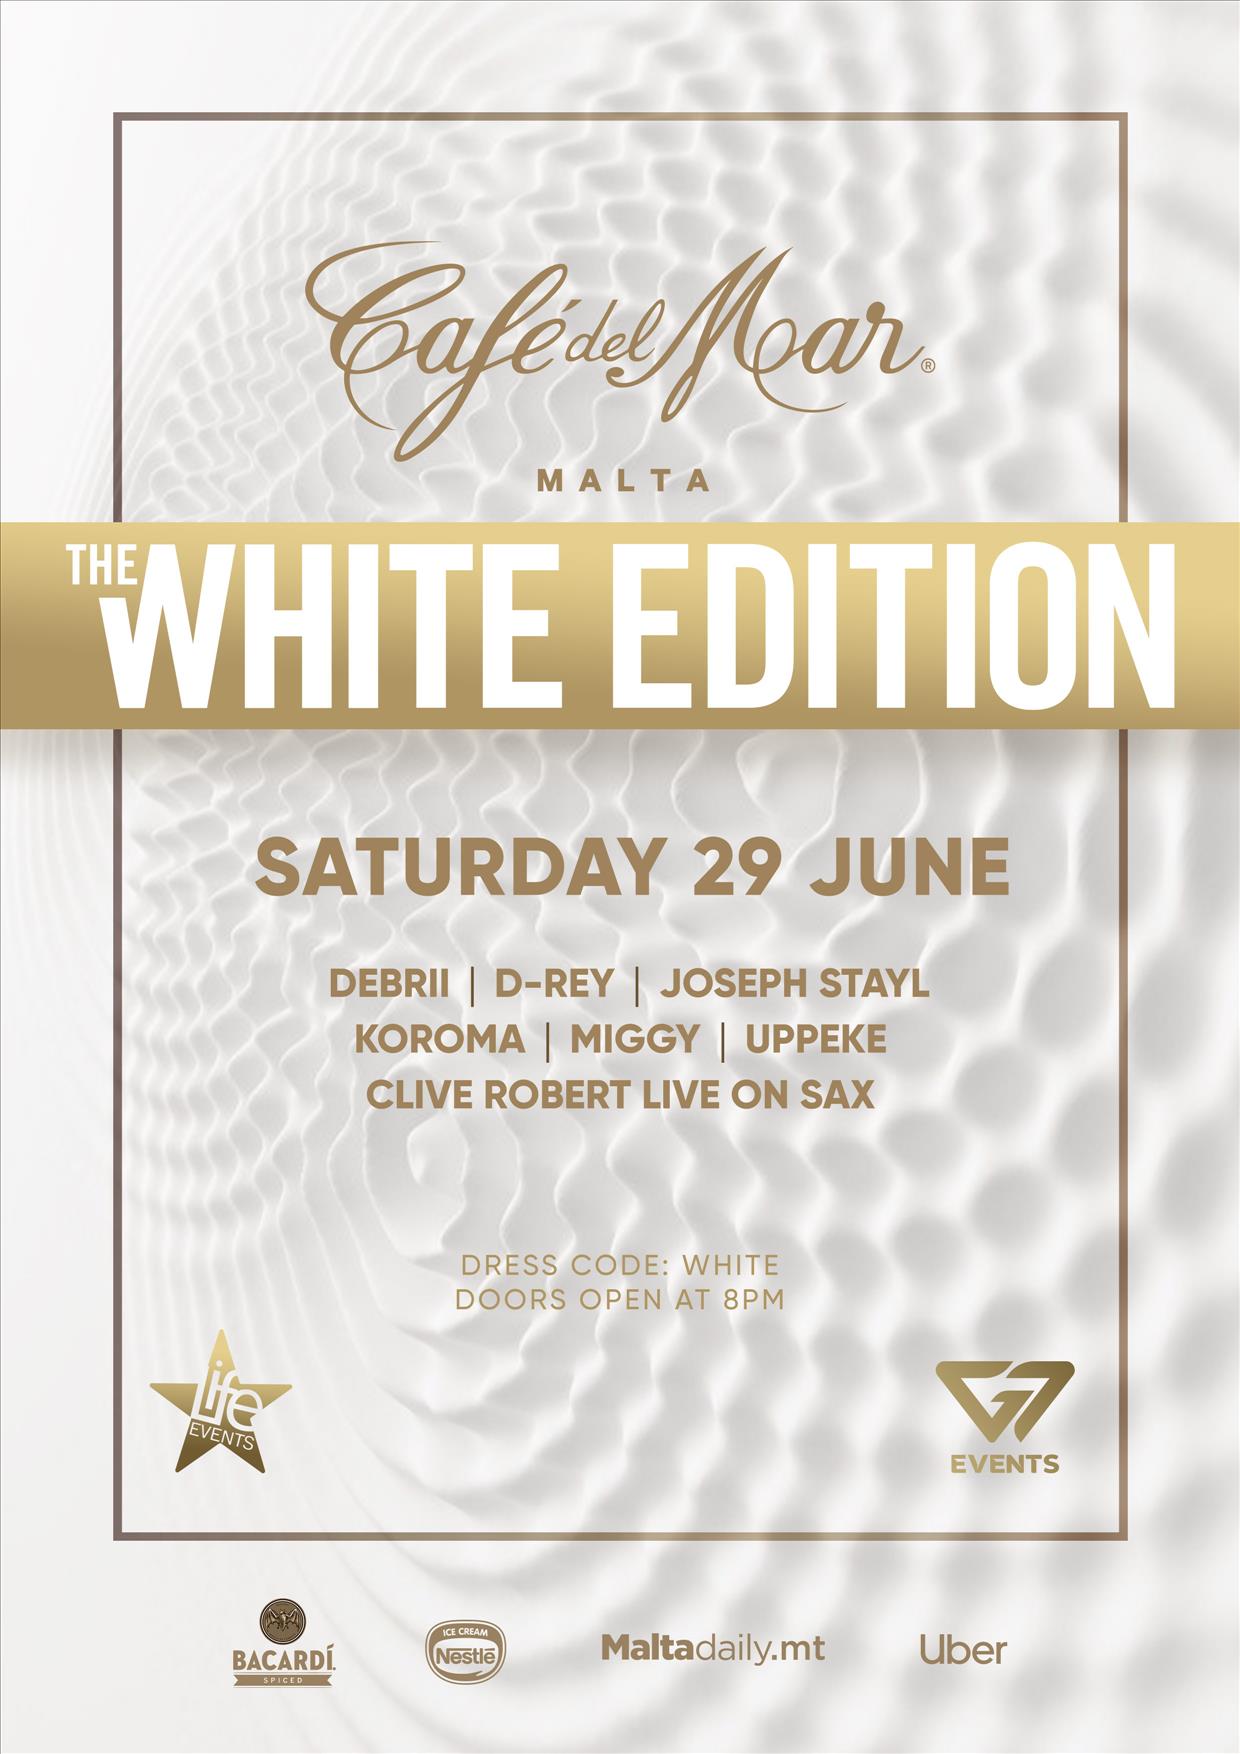 The Café del Mar White Edition poster